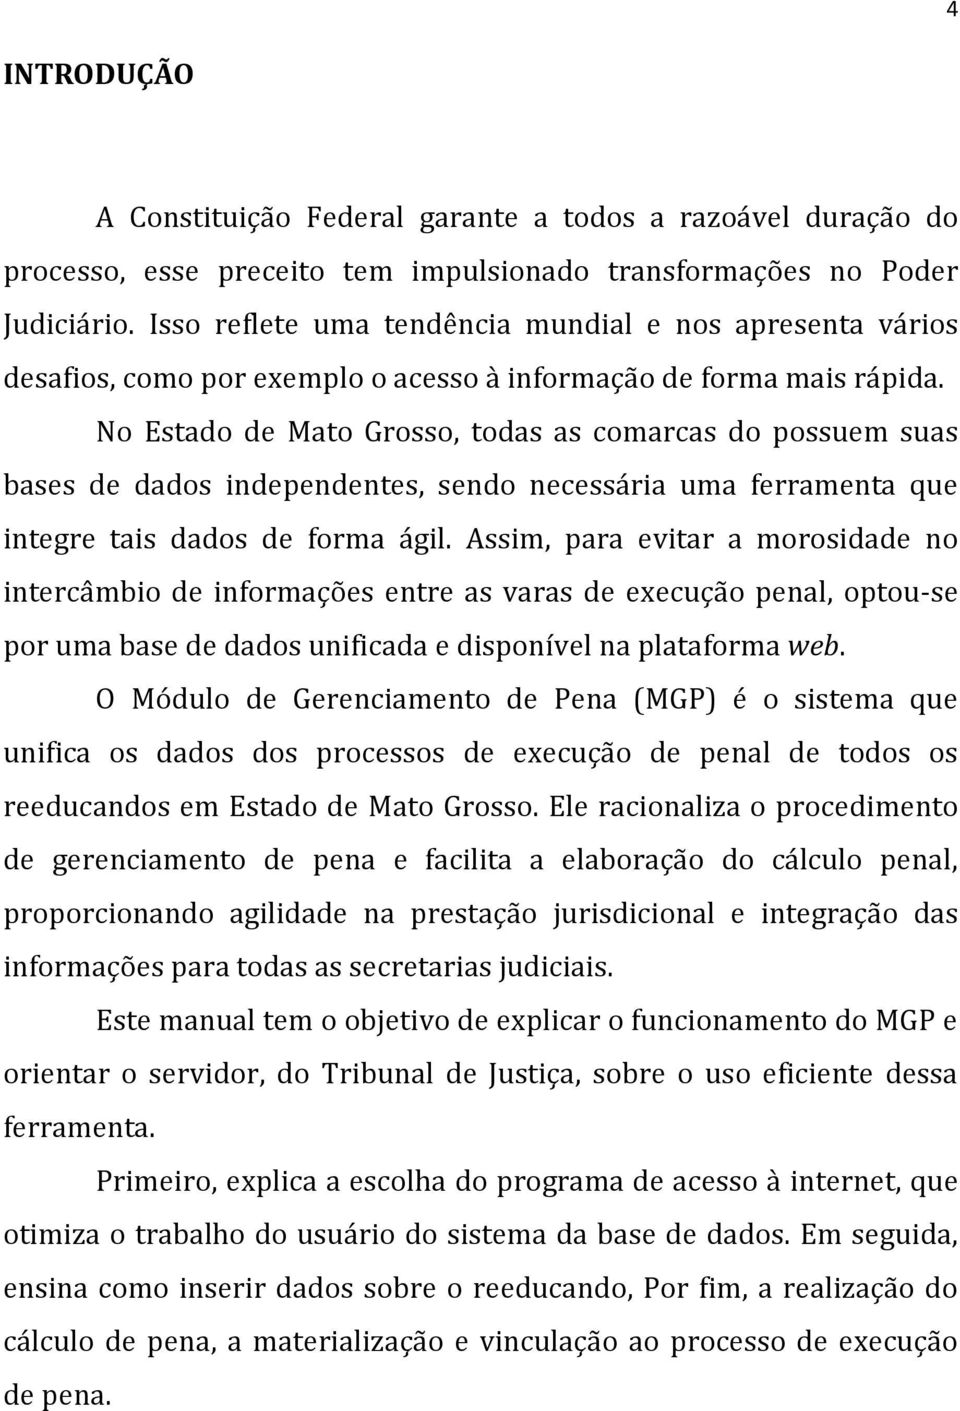 No Estado de Mato Grosso, todas as comarcas do possuem suas bases de dados independentes, sendo necessária uma ferramenta que integre tais dados de forma ágil.